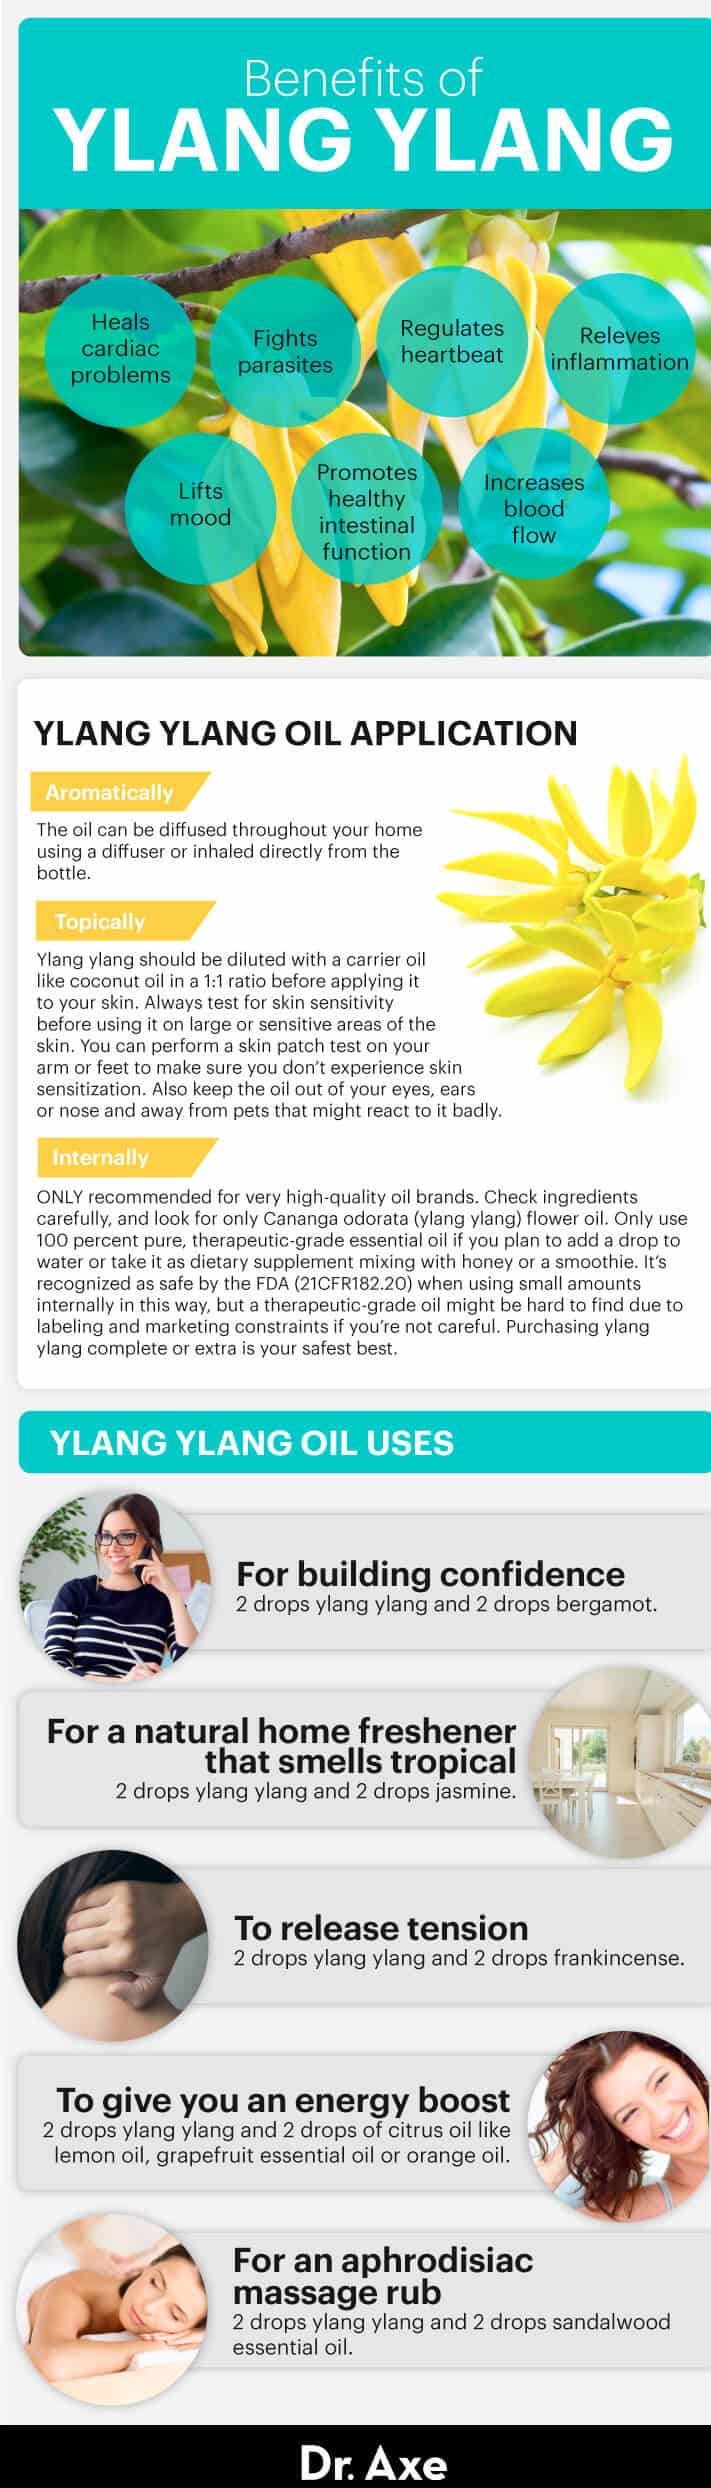 Guide to using ylang ylang - Dr. Axe